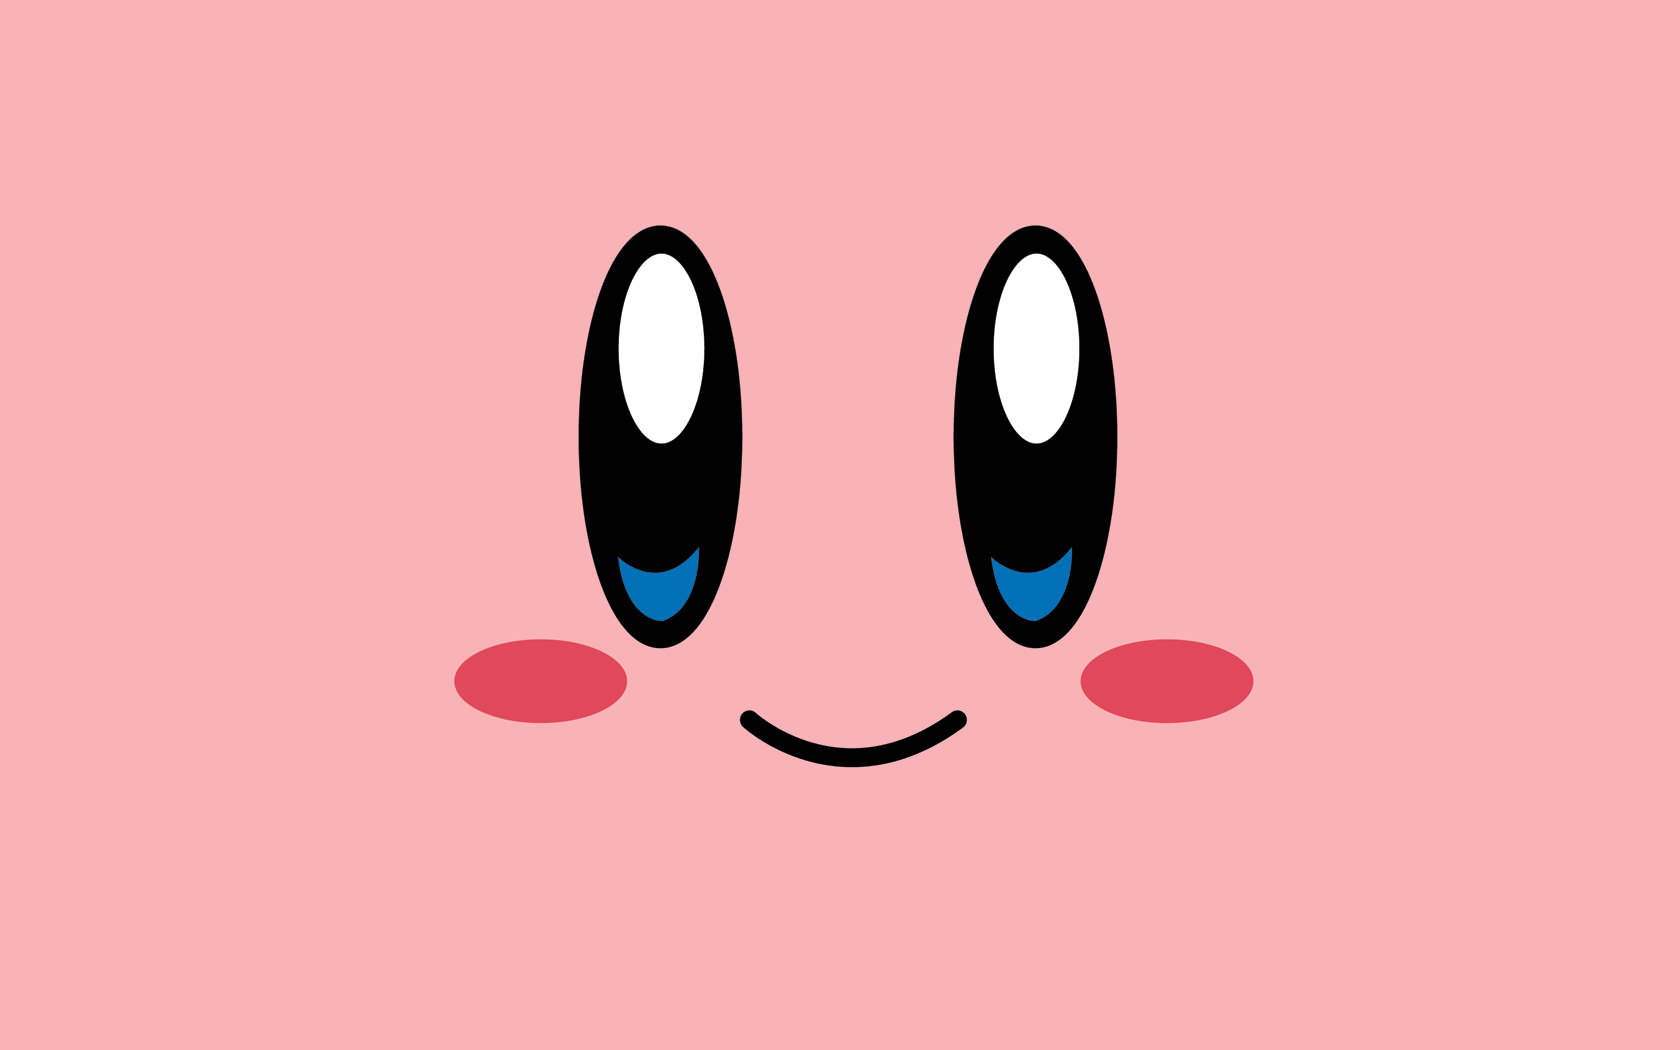 Revelados 3 nuevos juegos para la eShop de Wii U con motivo del aniversario de Kirby